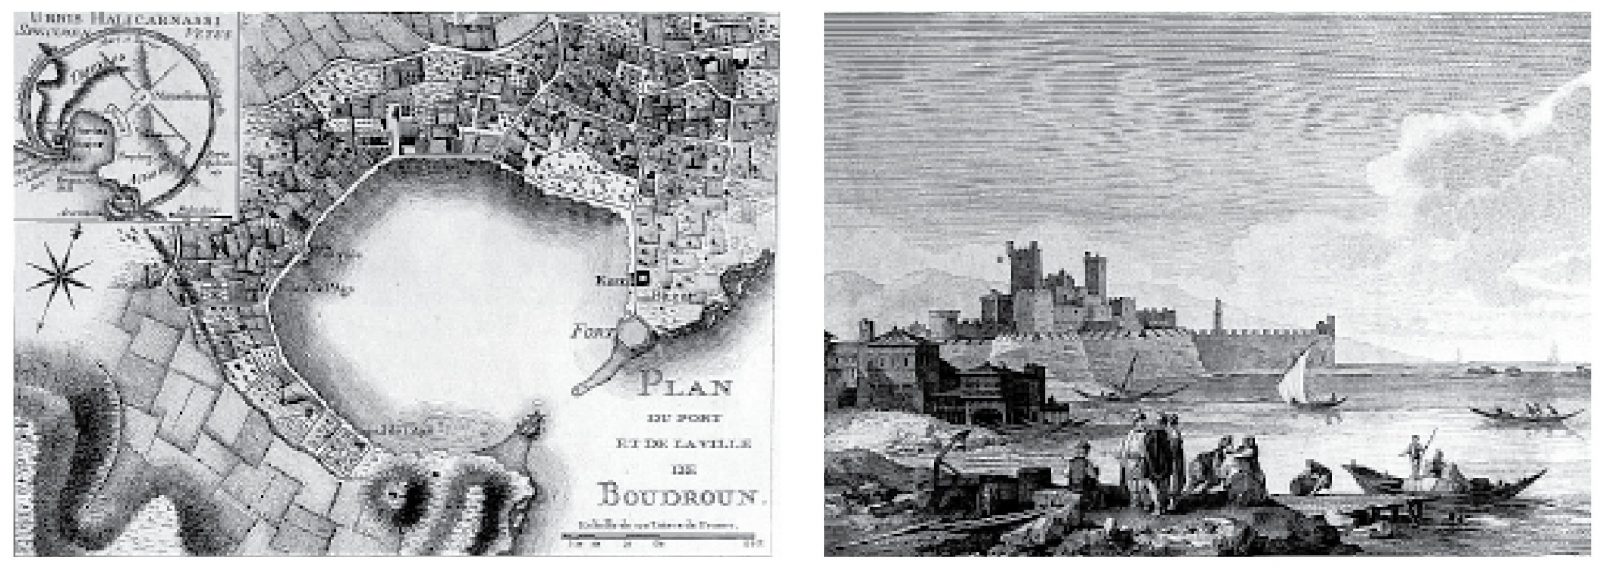 Fransa’nın İstanbul Konsolosu ve aynı zamanda arkeoloji meraklısı bir gezgin olan Choiseul Gouffier’nin 1782 yılında Fransa’da yayınladığı “Voyage pittoresque de la Grece” kitabından bir gravür. Harita çizimi dönemin ünlü Fransız gravür sanatçıları F. Kauffer ve J. Perrier’ye ait. Her iki görselde de Bodrum adı “Boudroun” diye geçiyor.